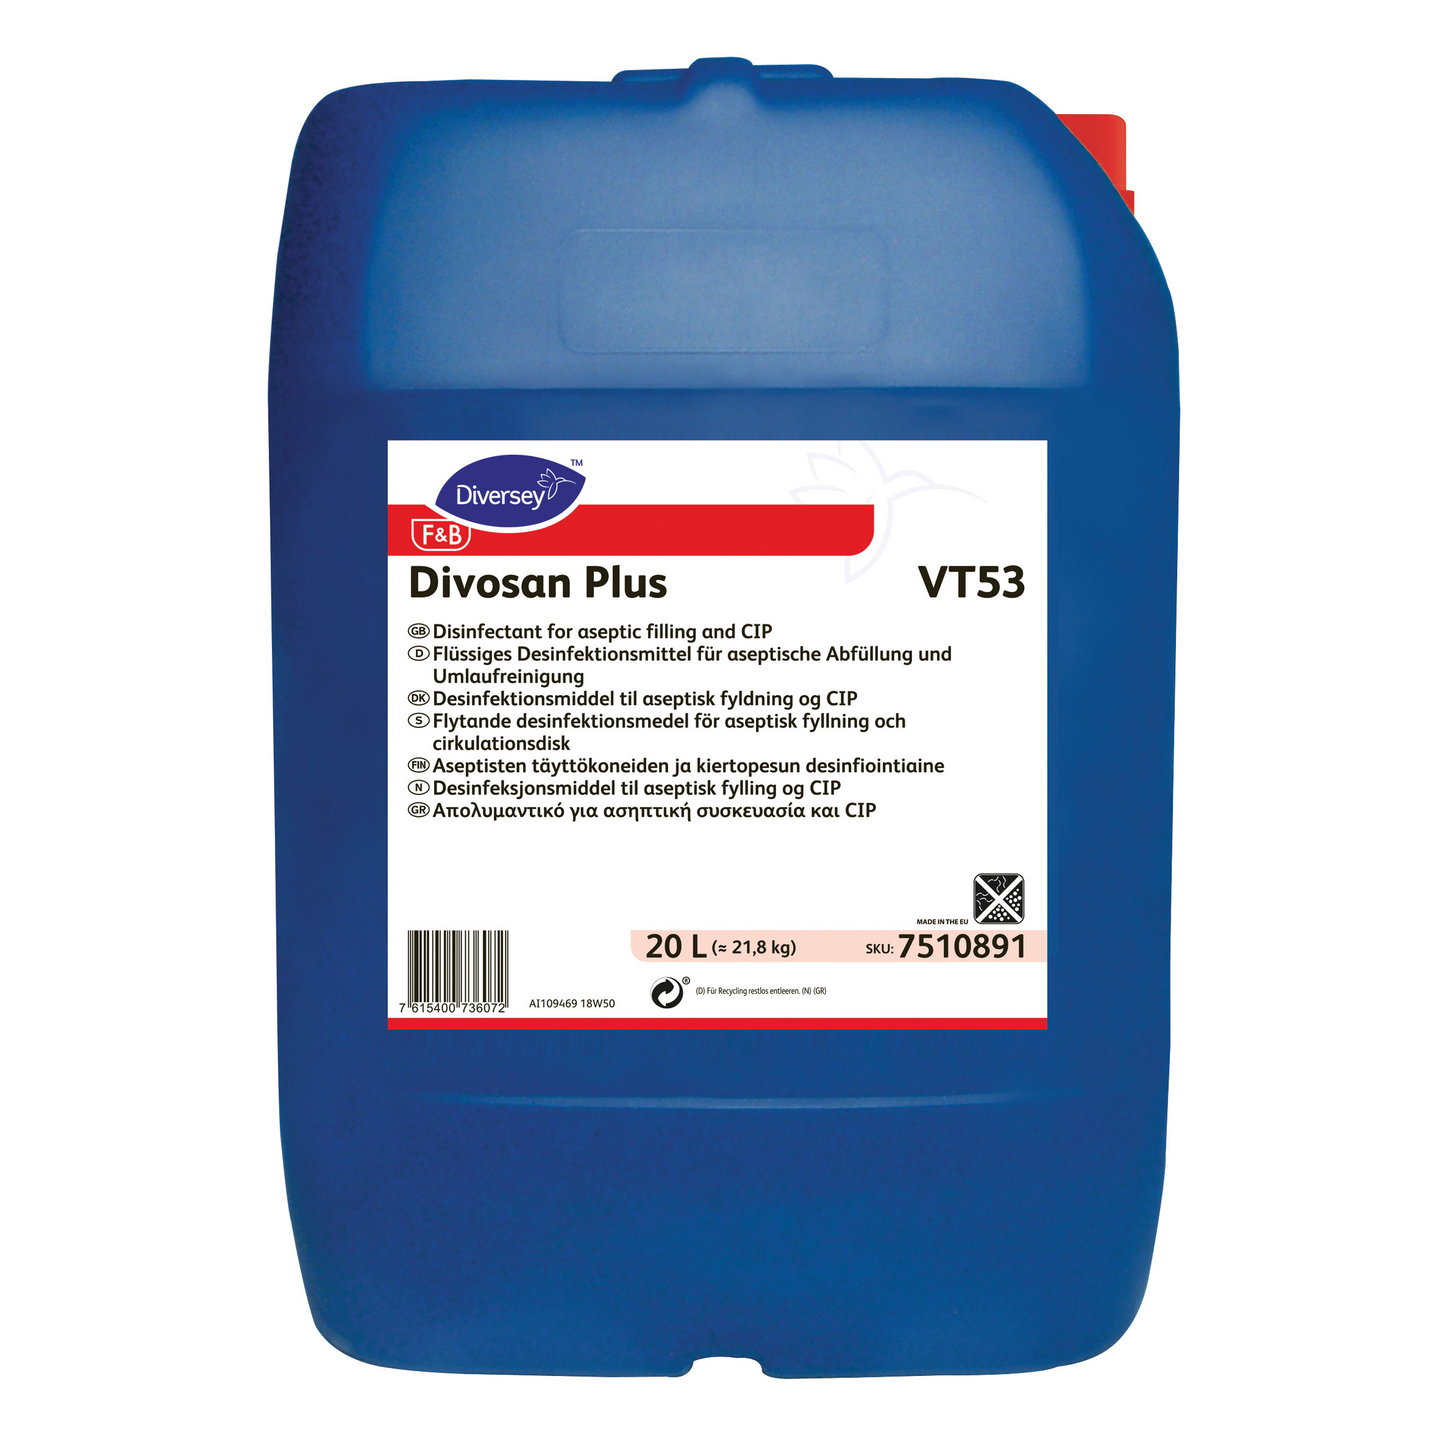 Diversey Divosan Plus VT53 20l Aseptisten täyttökoneiden ja kiertopesun desinfiointiaine